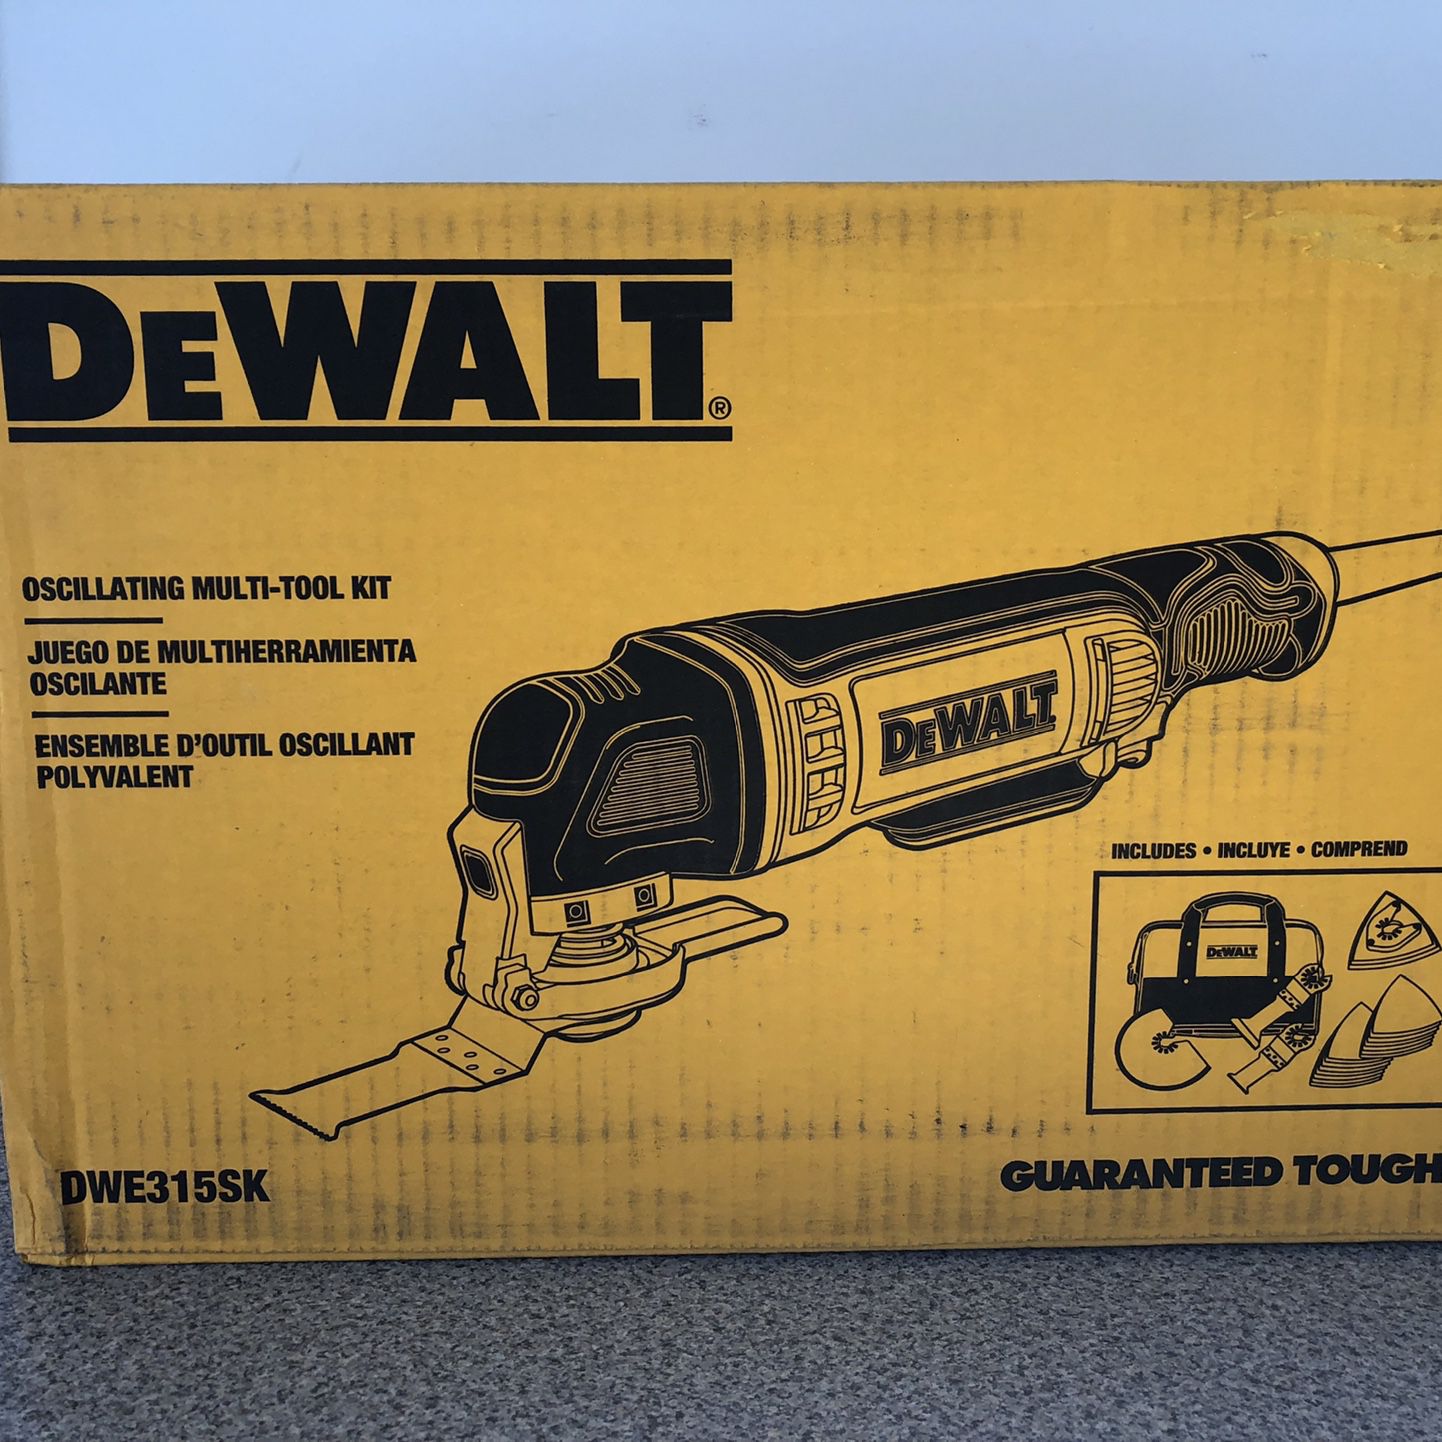 DEWALT DWE315SK Oscillating Multi-Tool Kit, Yellow - 2